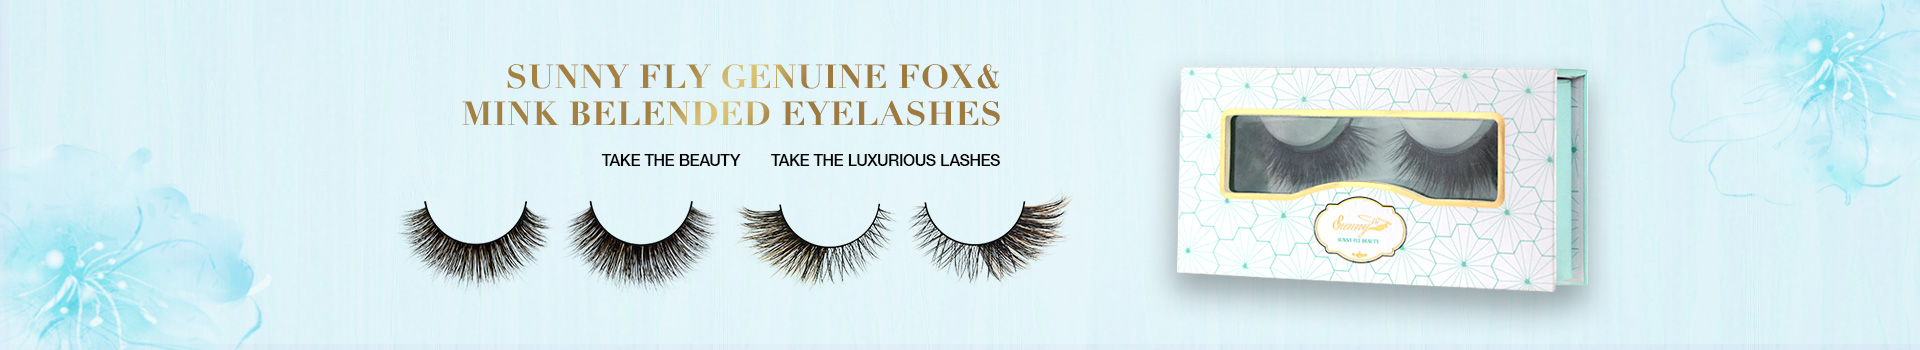 Fox & Mink Fur Blended Eyelashes FMB26